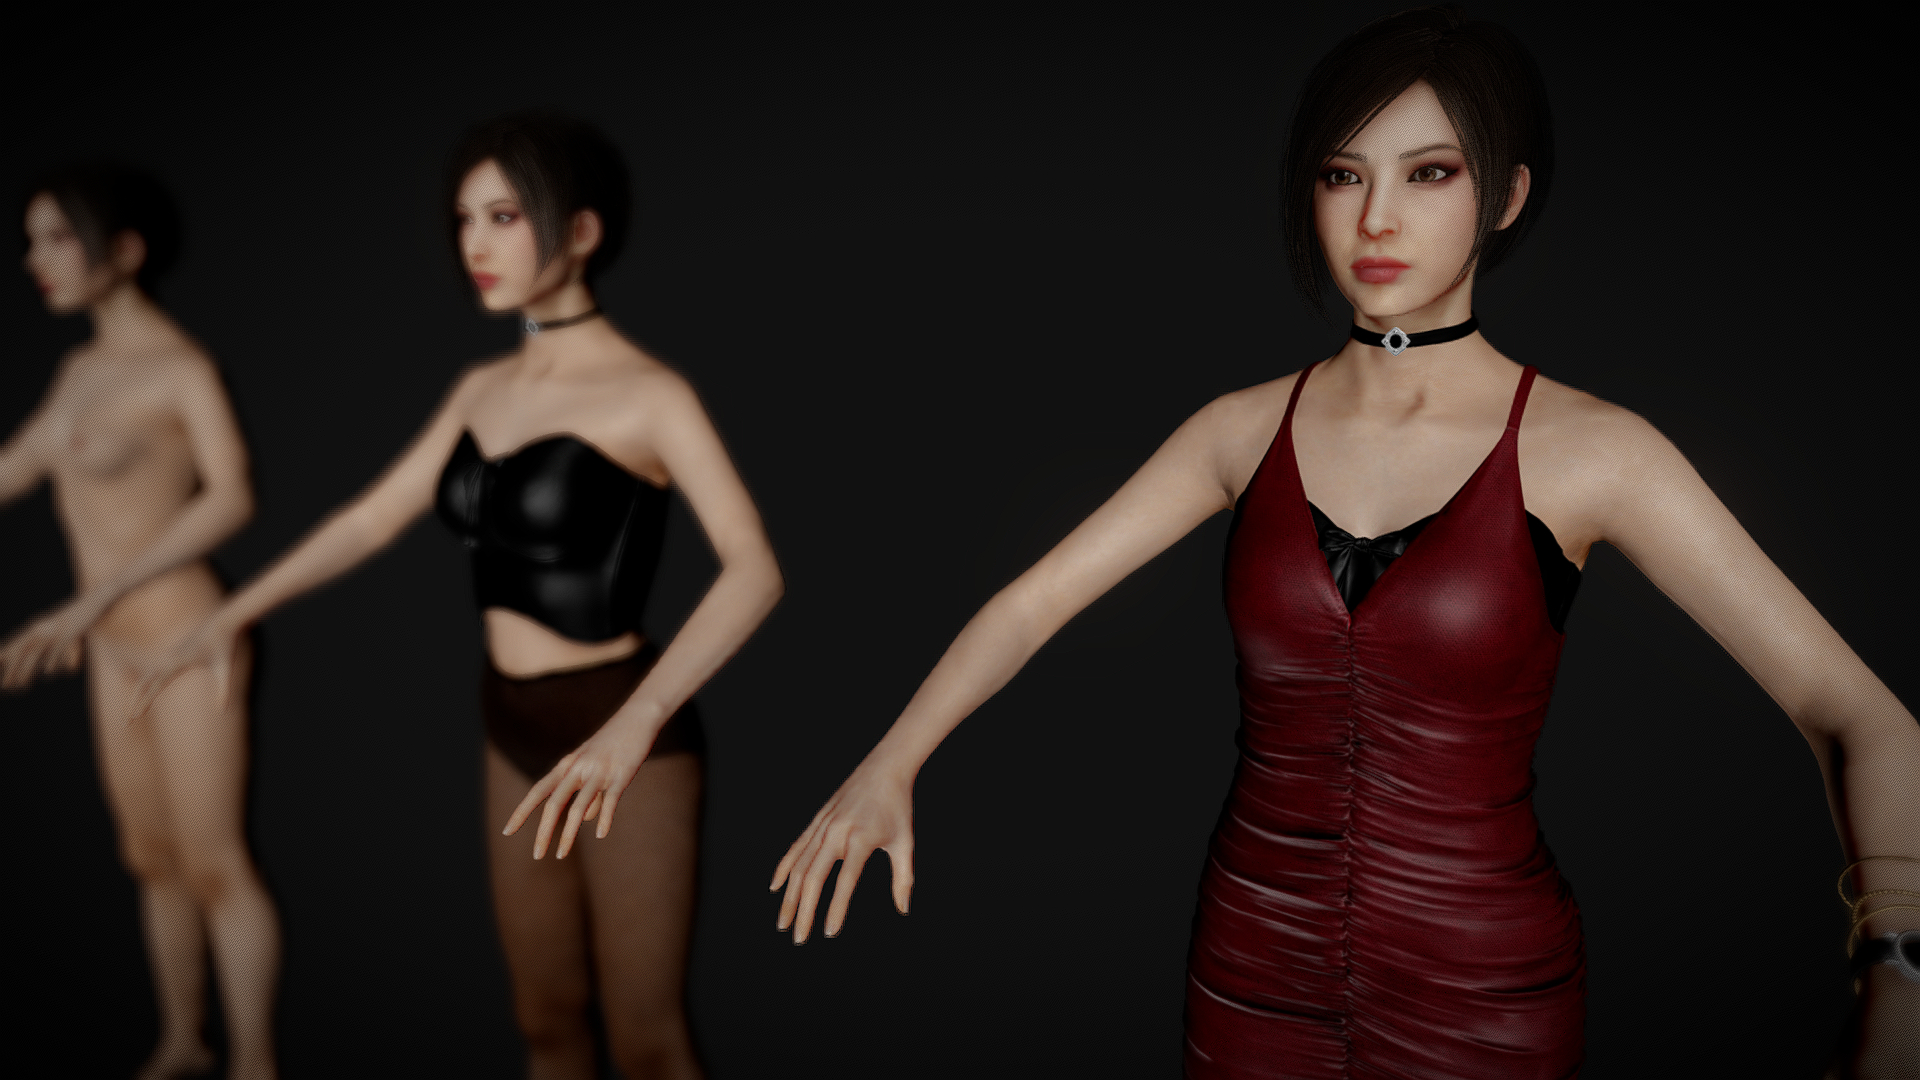 Ada Wong Resident Evil 2 3d model 1. Steam. 